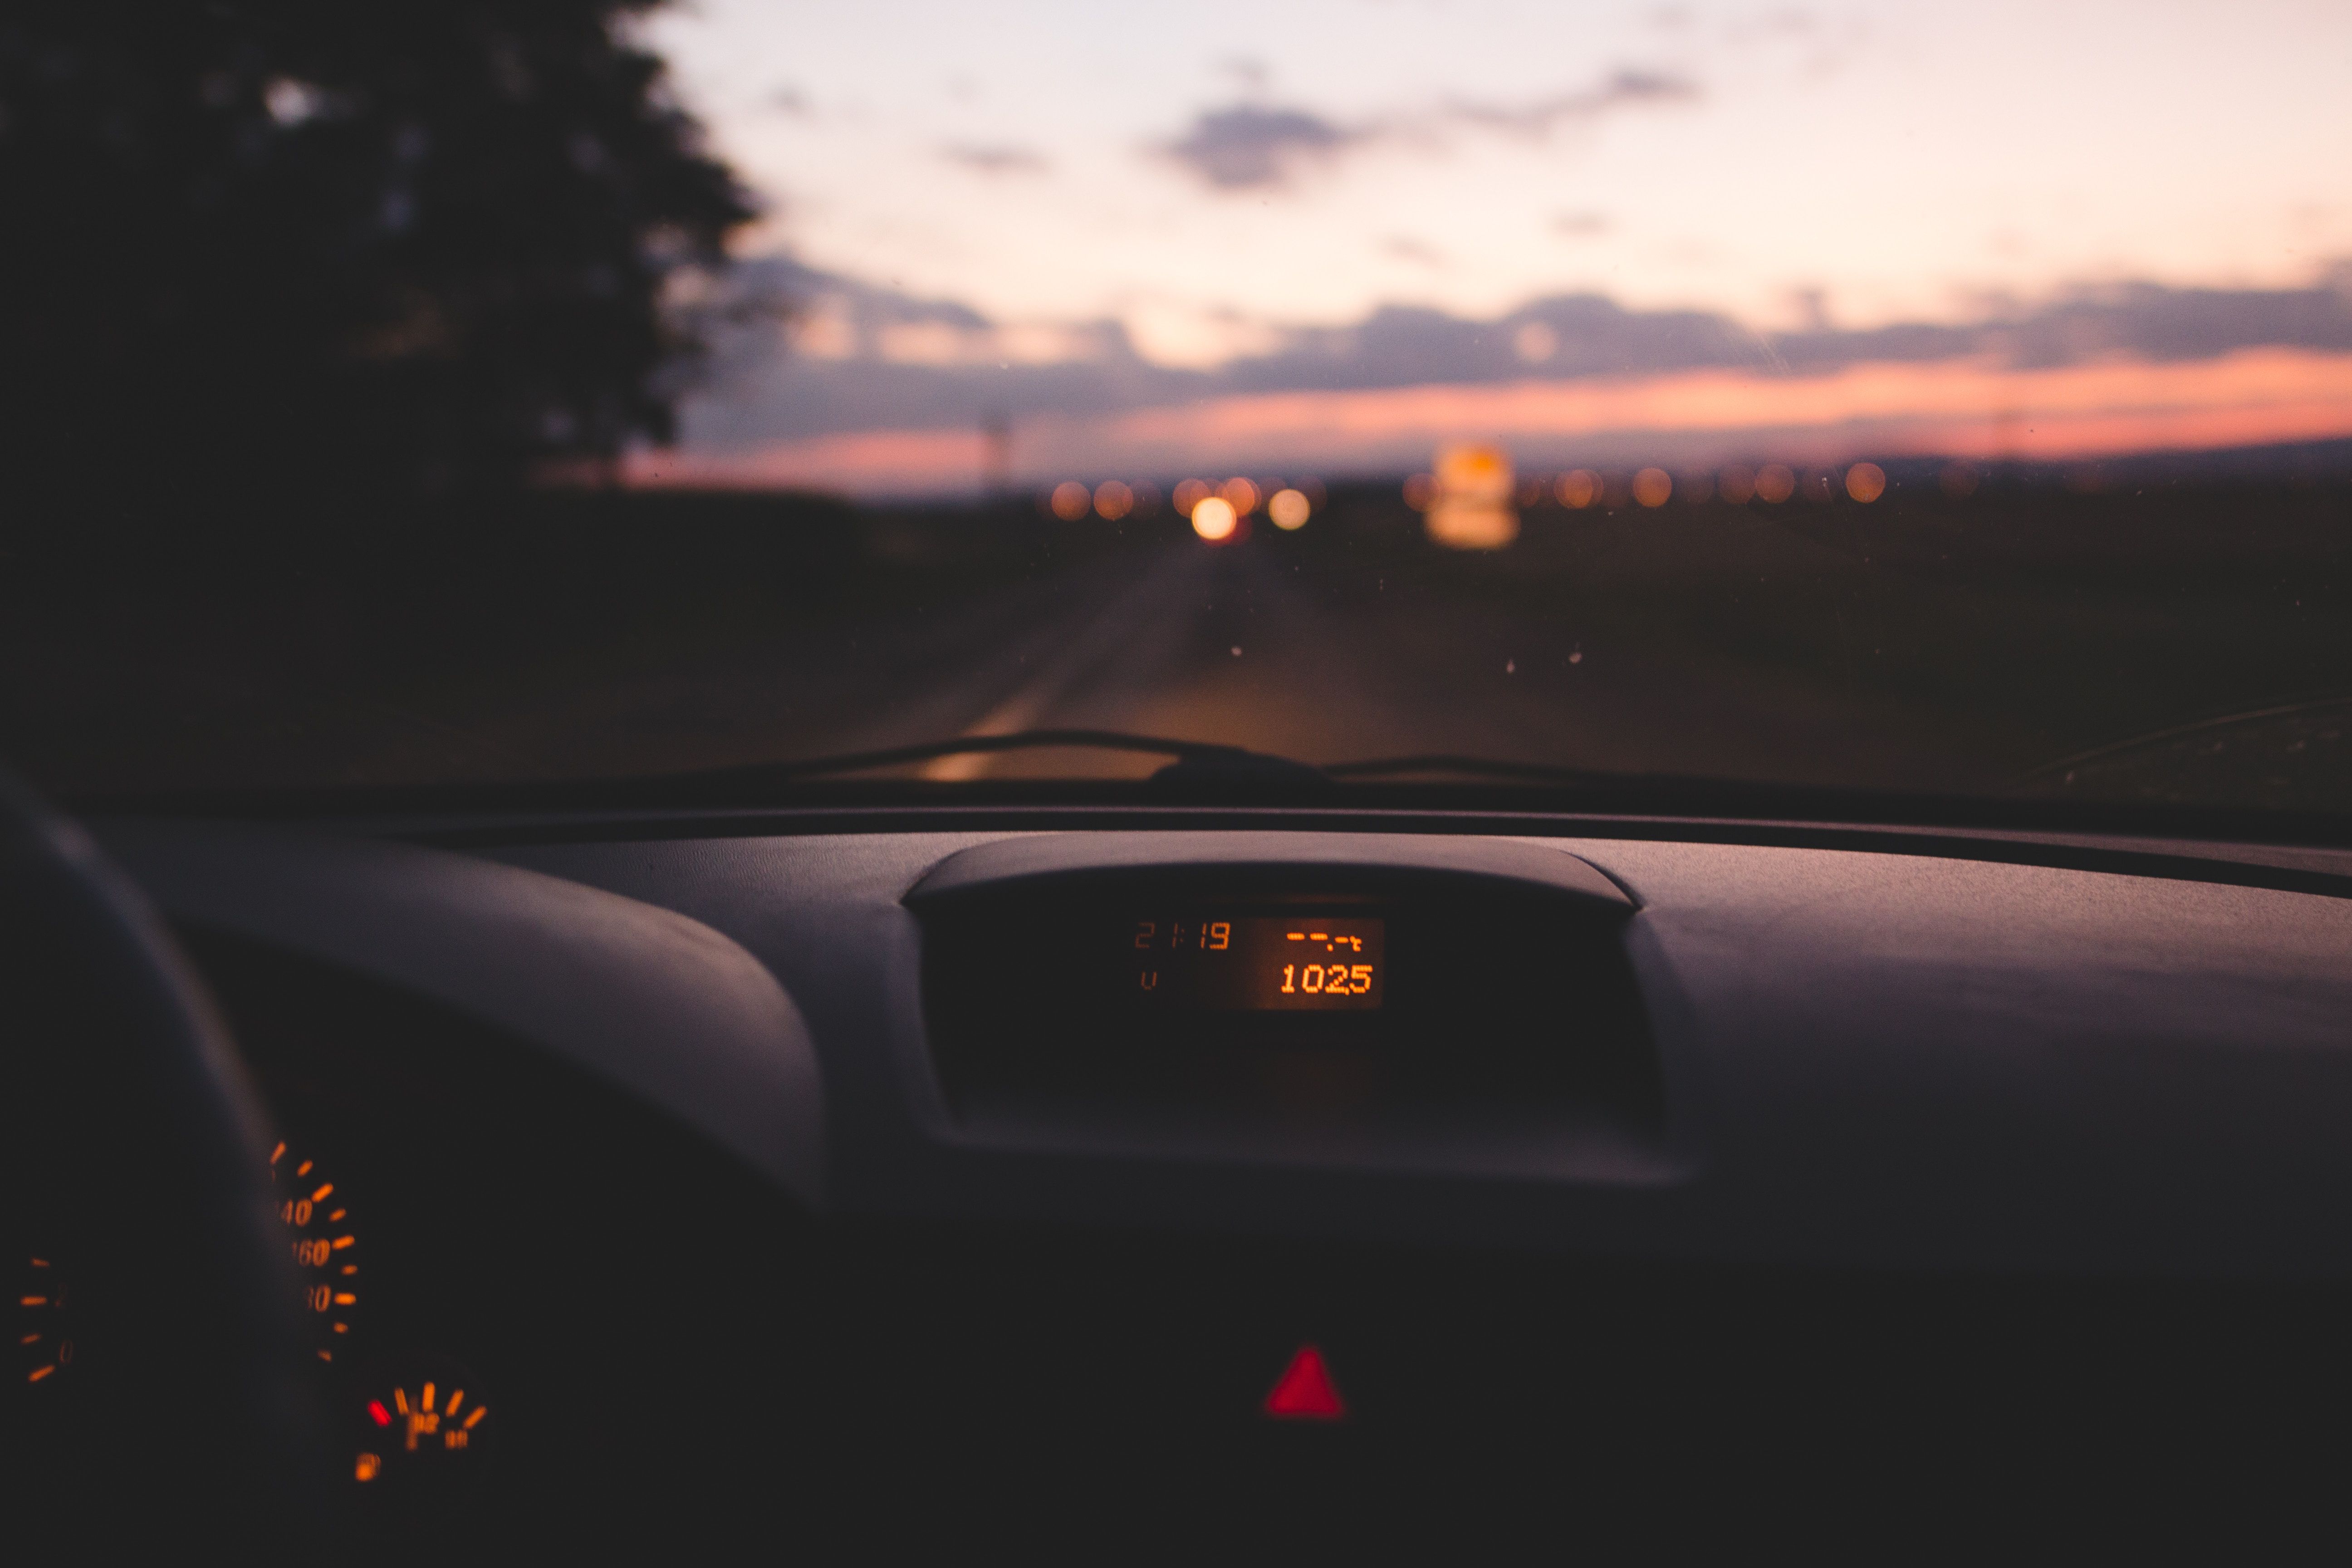 Looking at dash while driving at night